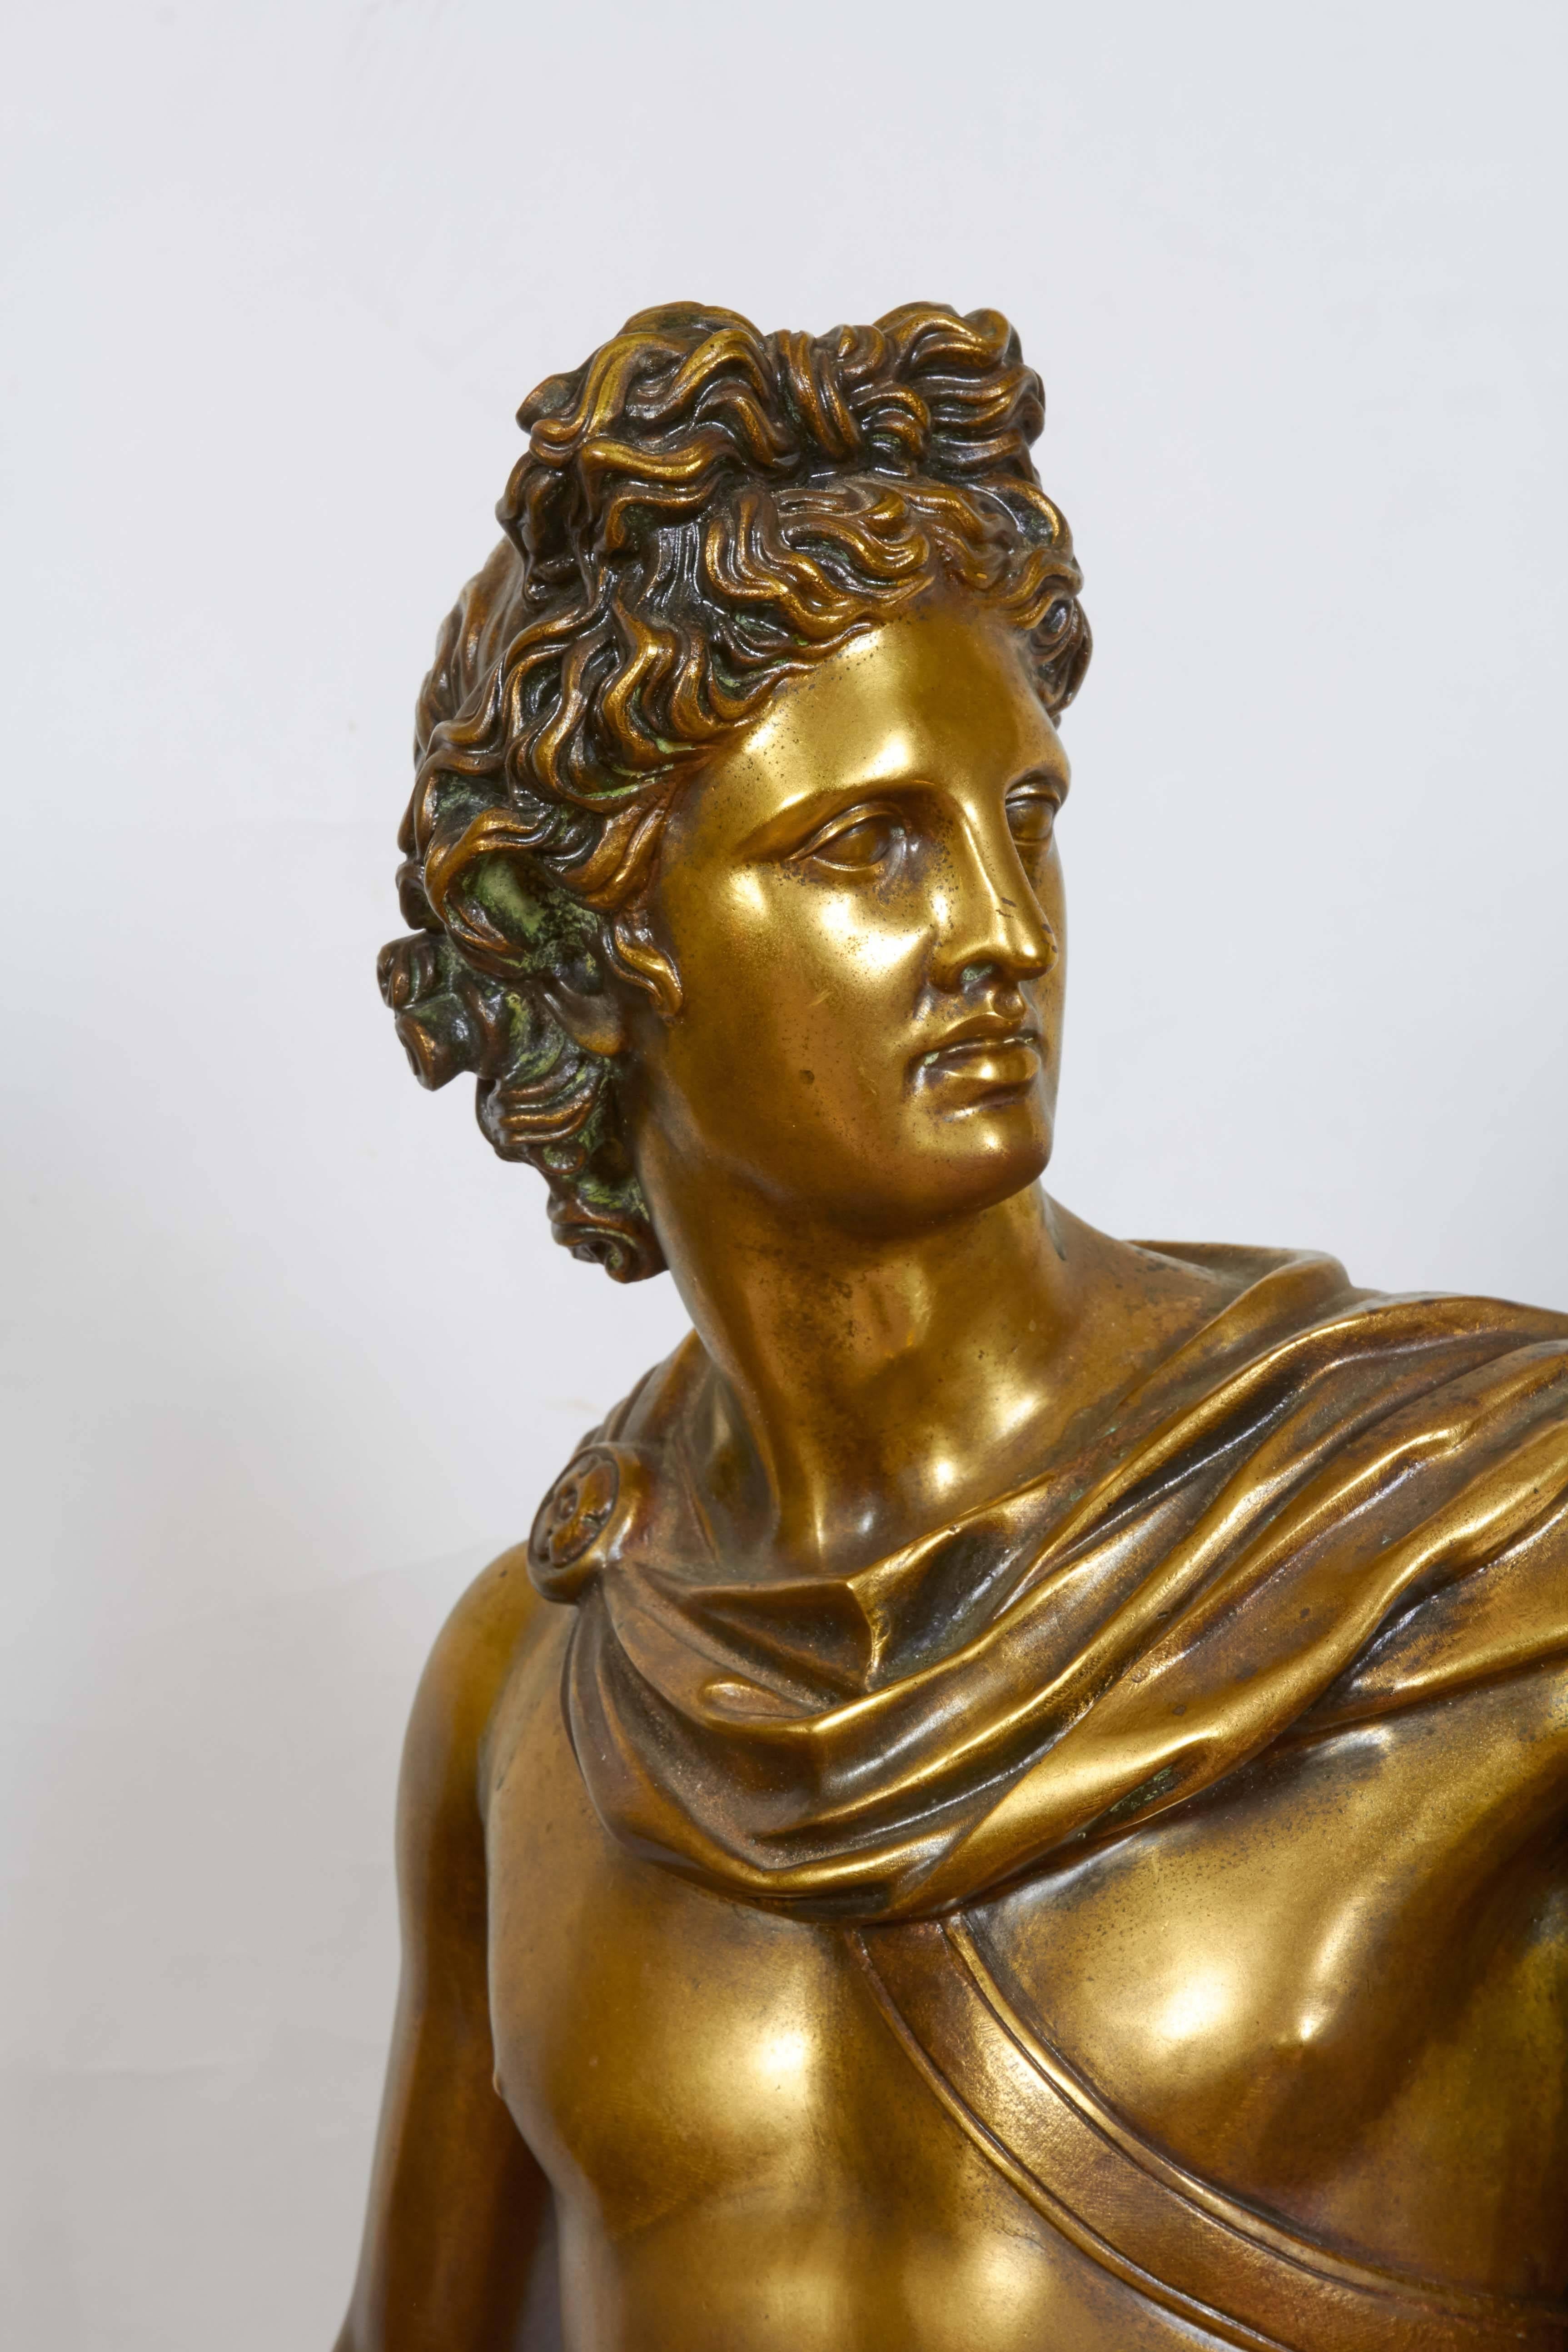 A Roman replica sculpture of the Apollo Belvedere, standing contrapposto on a circular base.